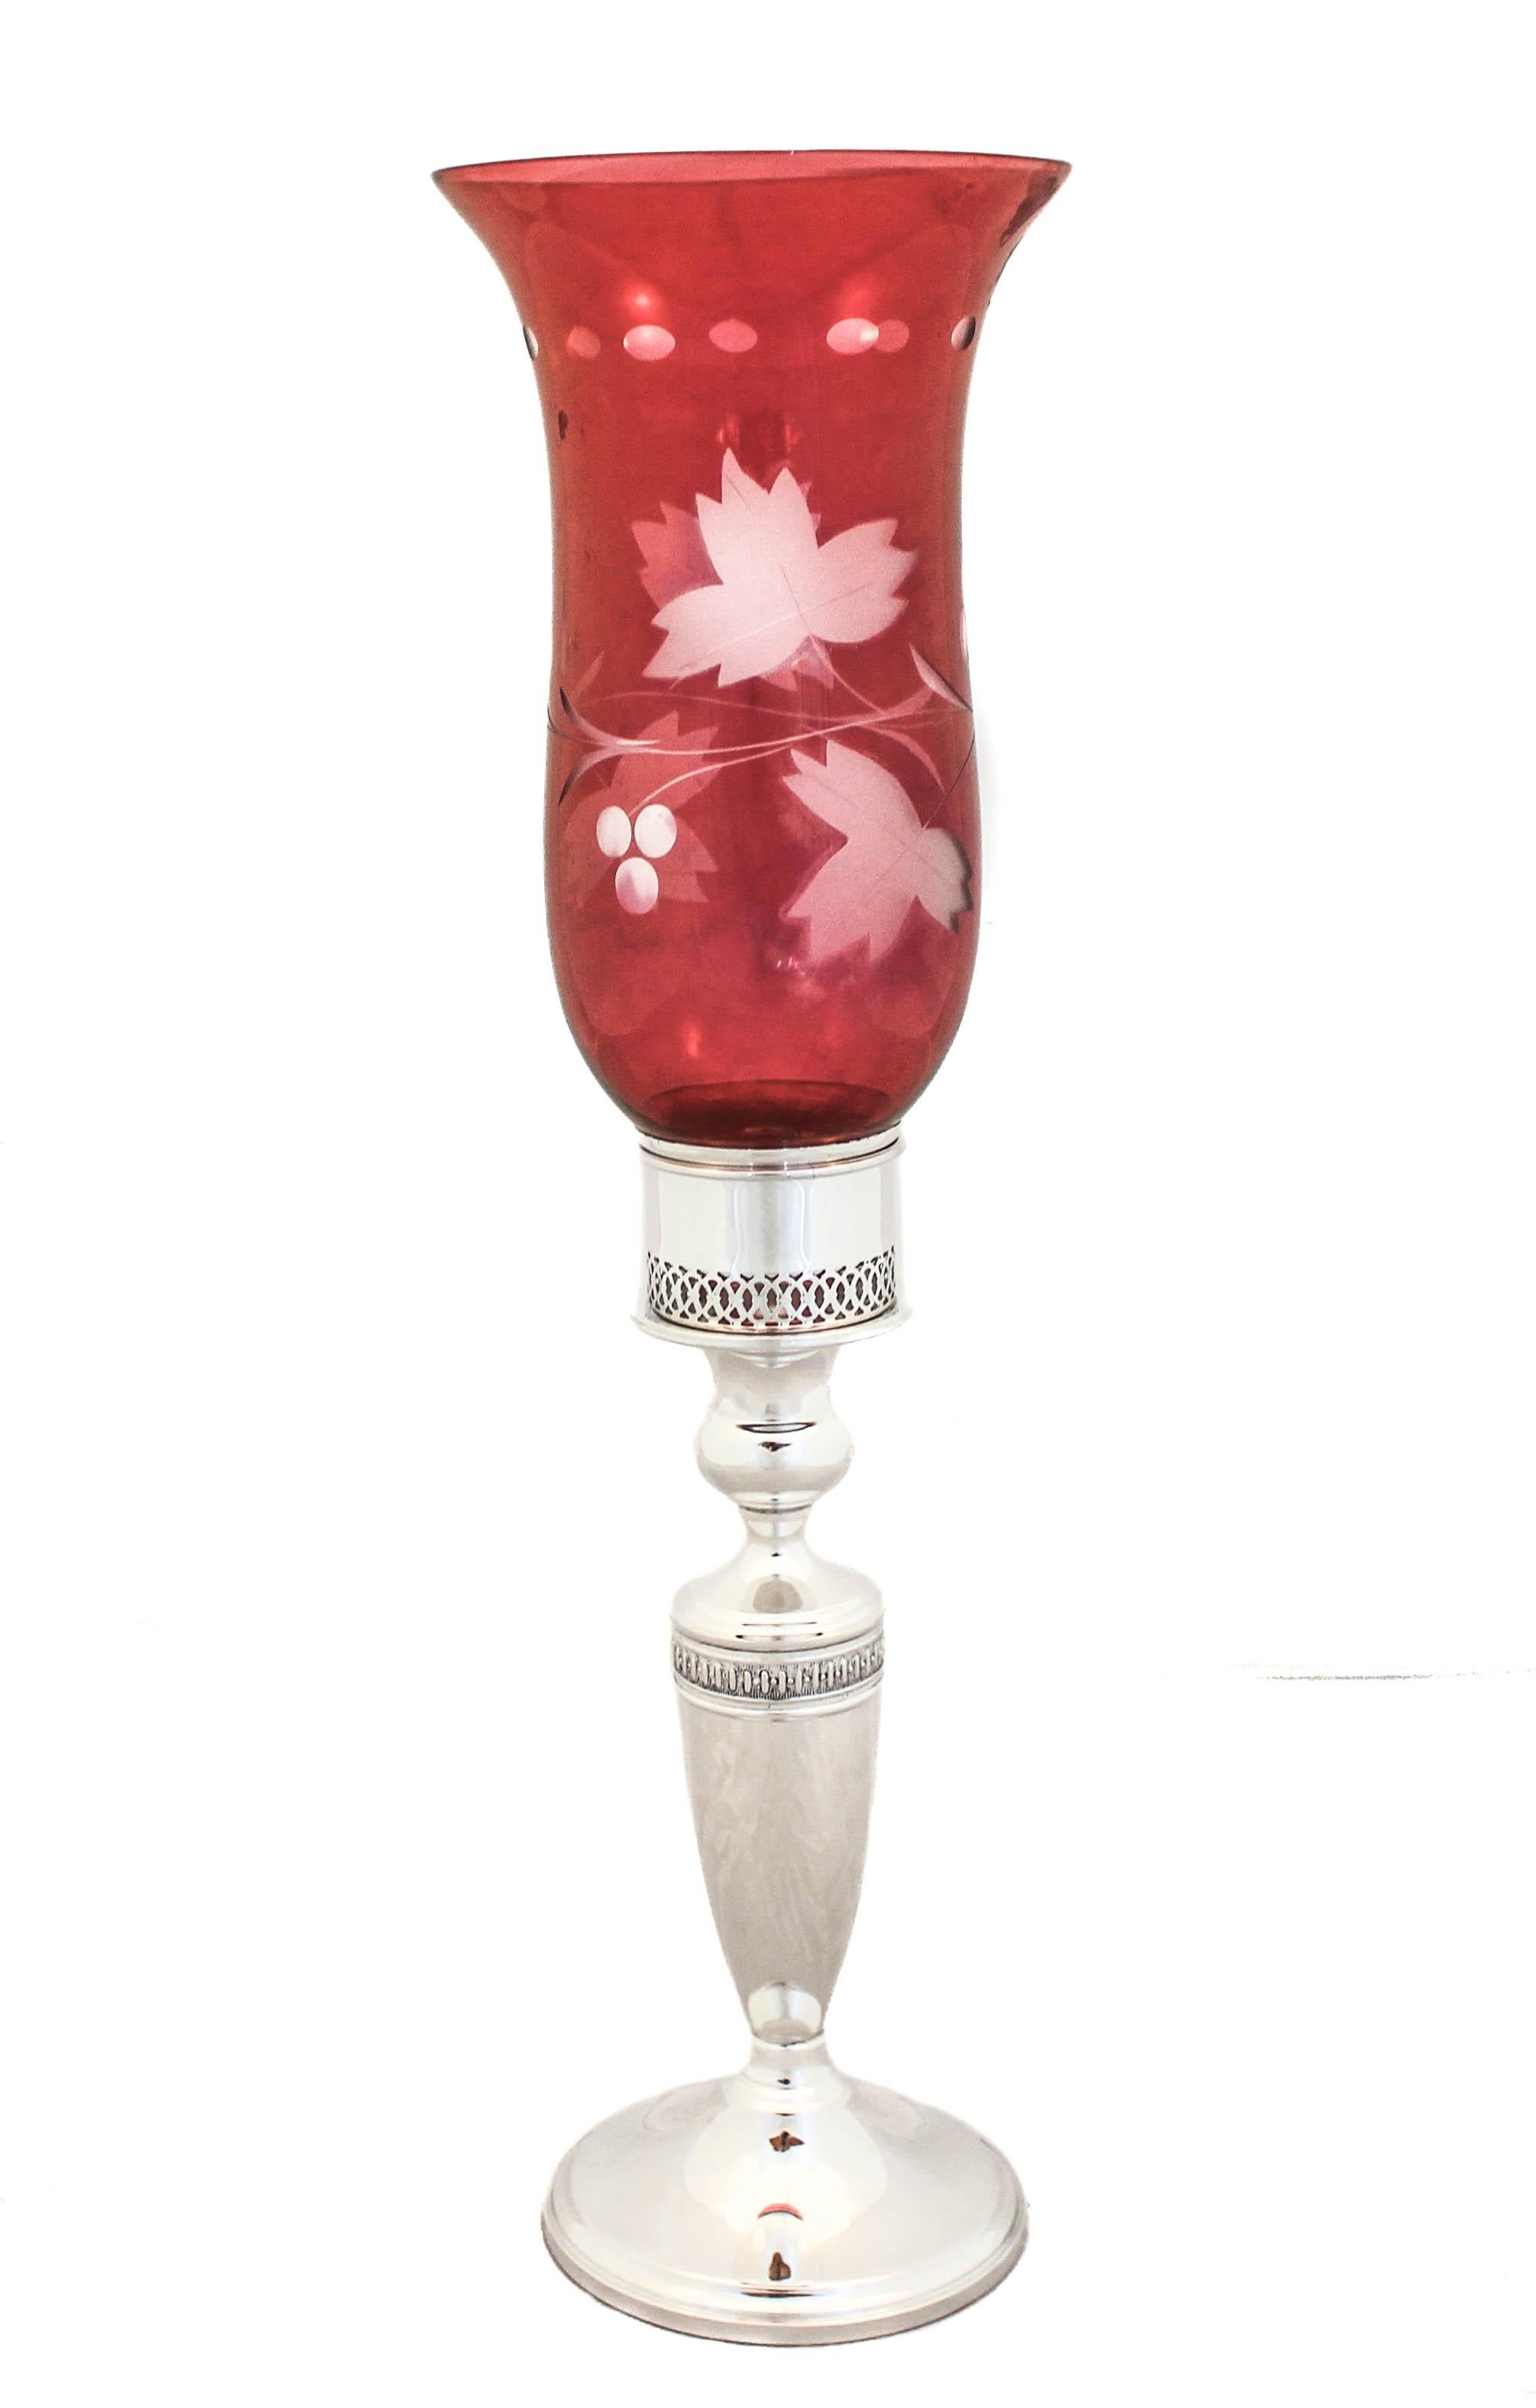 Nous sommes ravis de vous proposer cette paire de chandeliers en argent sterling avec lampes-tempête en verre rouge. Quelle façon magnifique et unique d'habiller votre table de Noël ! Le verre est amovible et vous pouvez utiliser les chandeliers